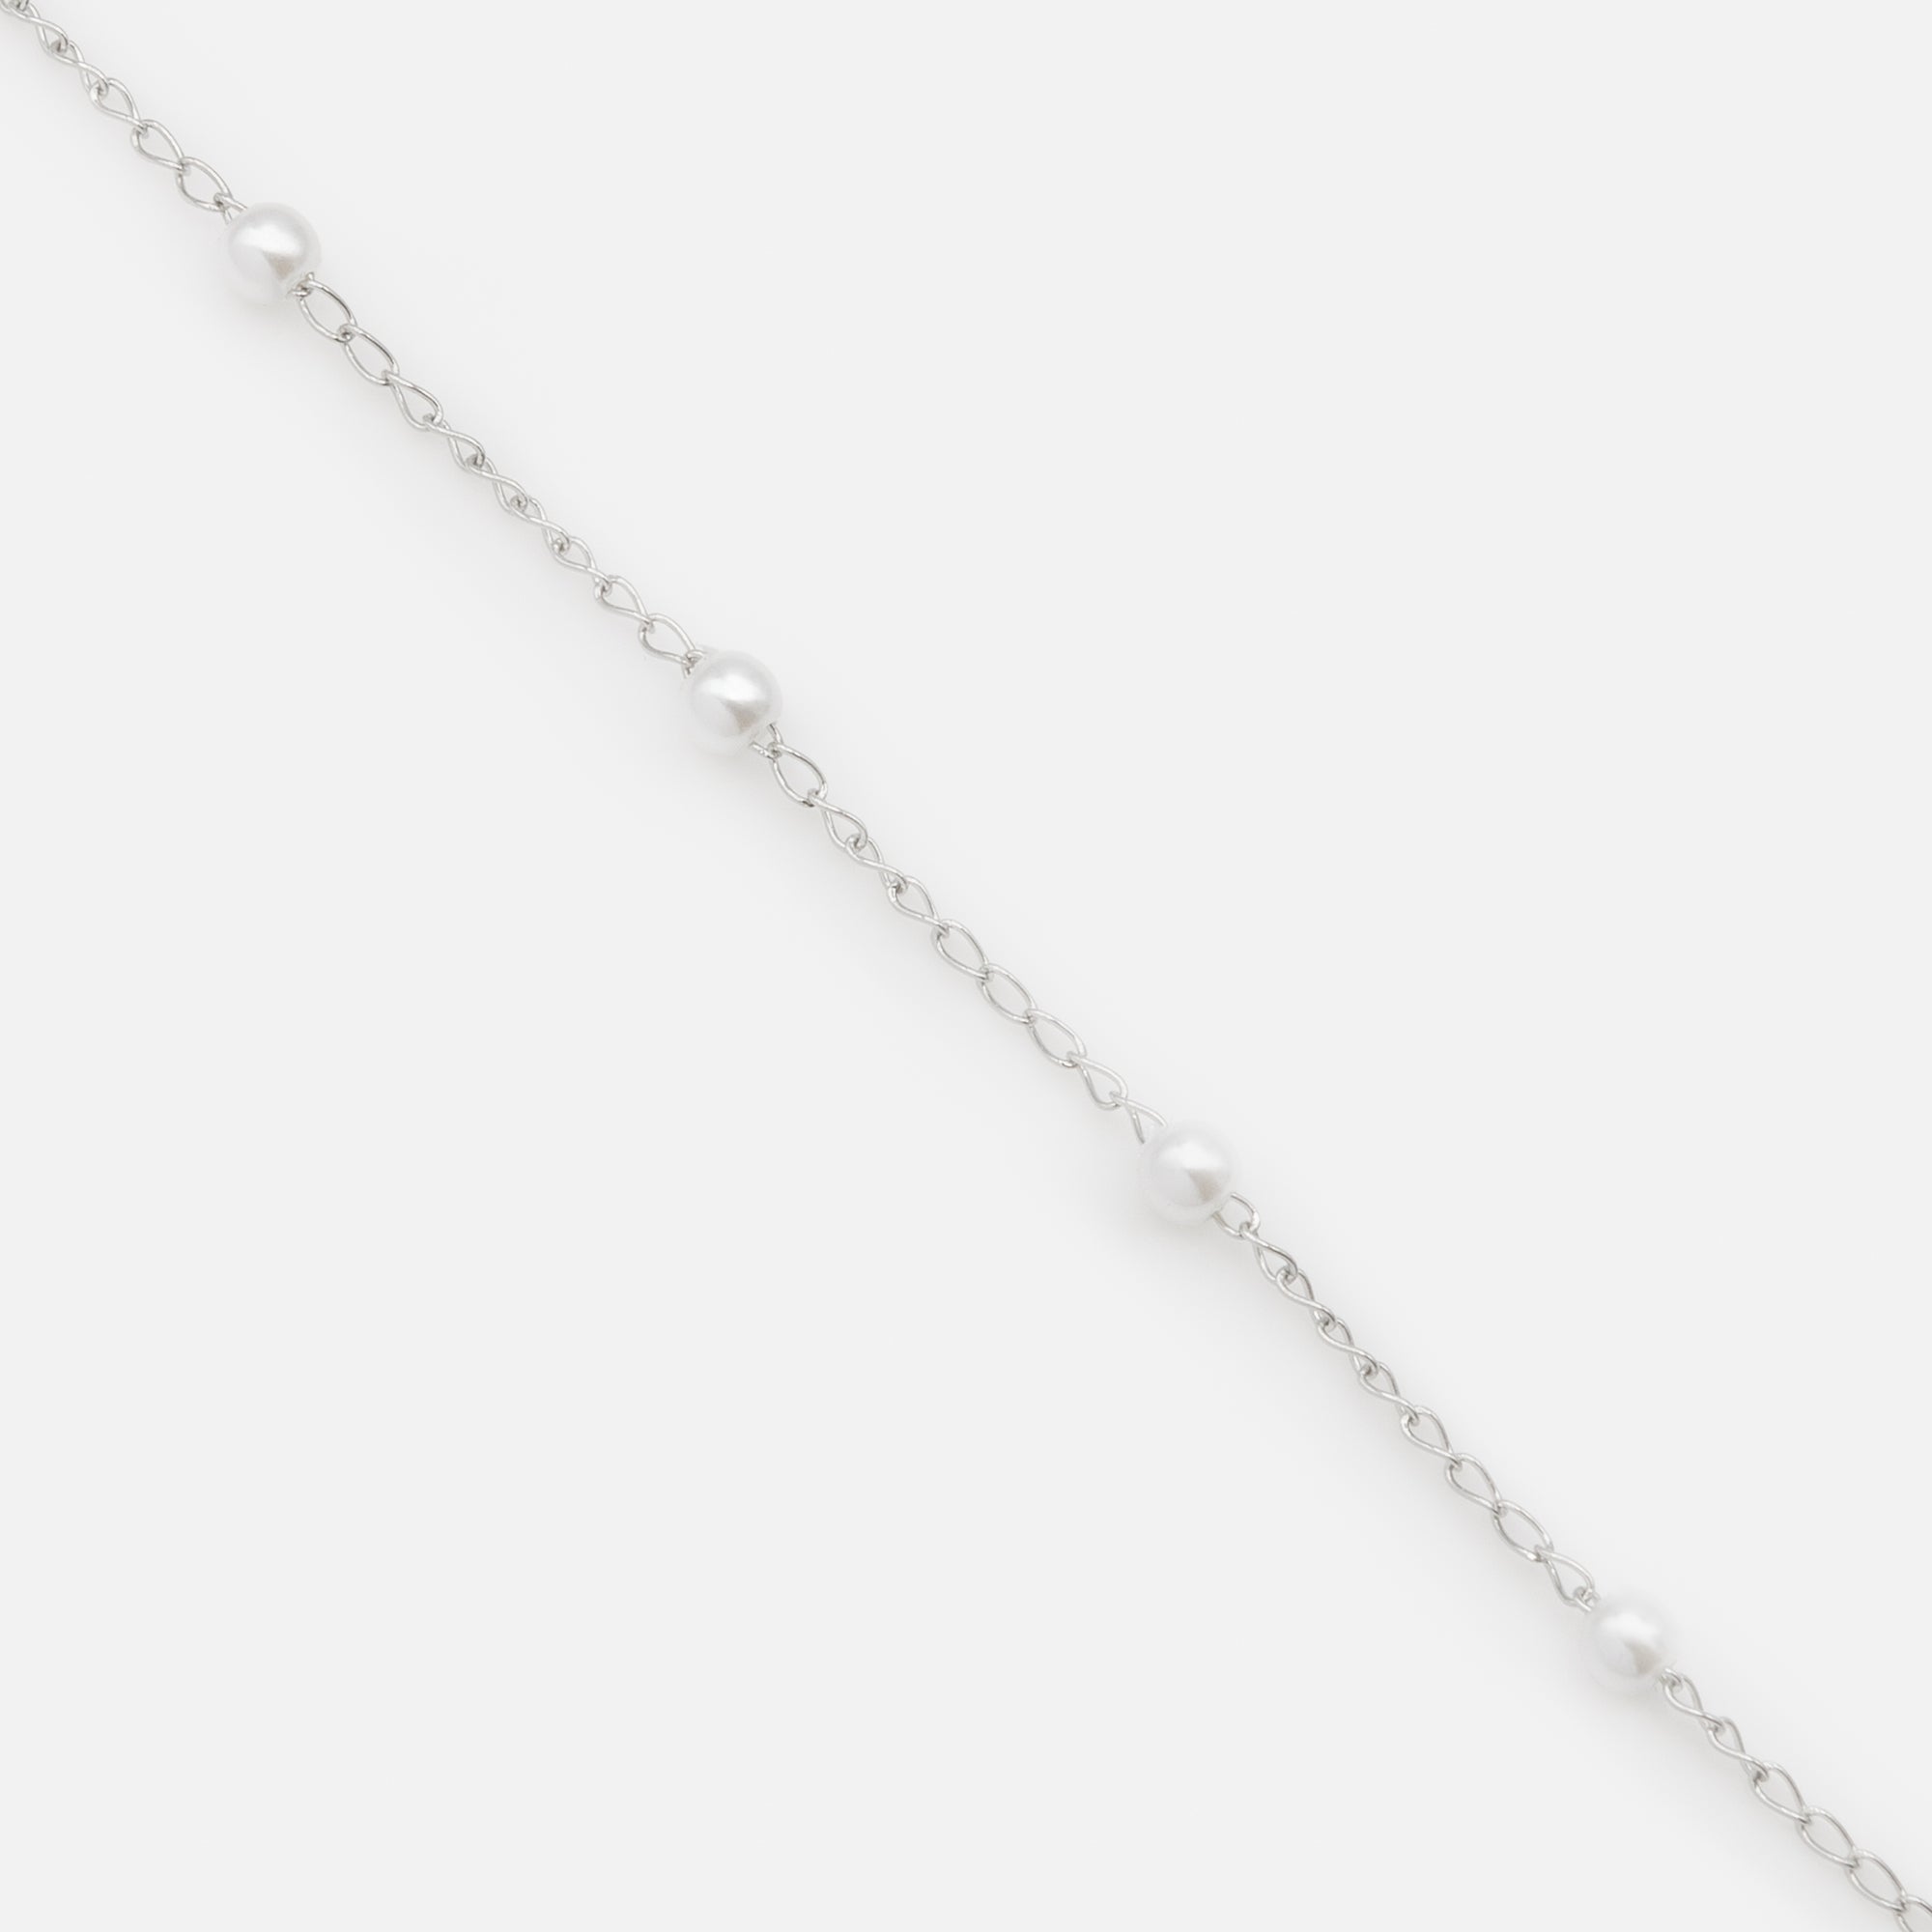 Bracelet argenté avec petites perles en acier inoxydable